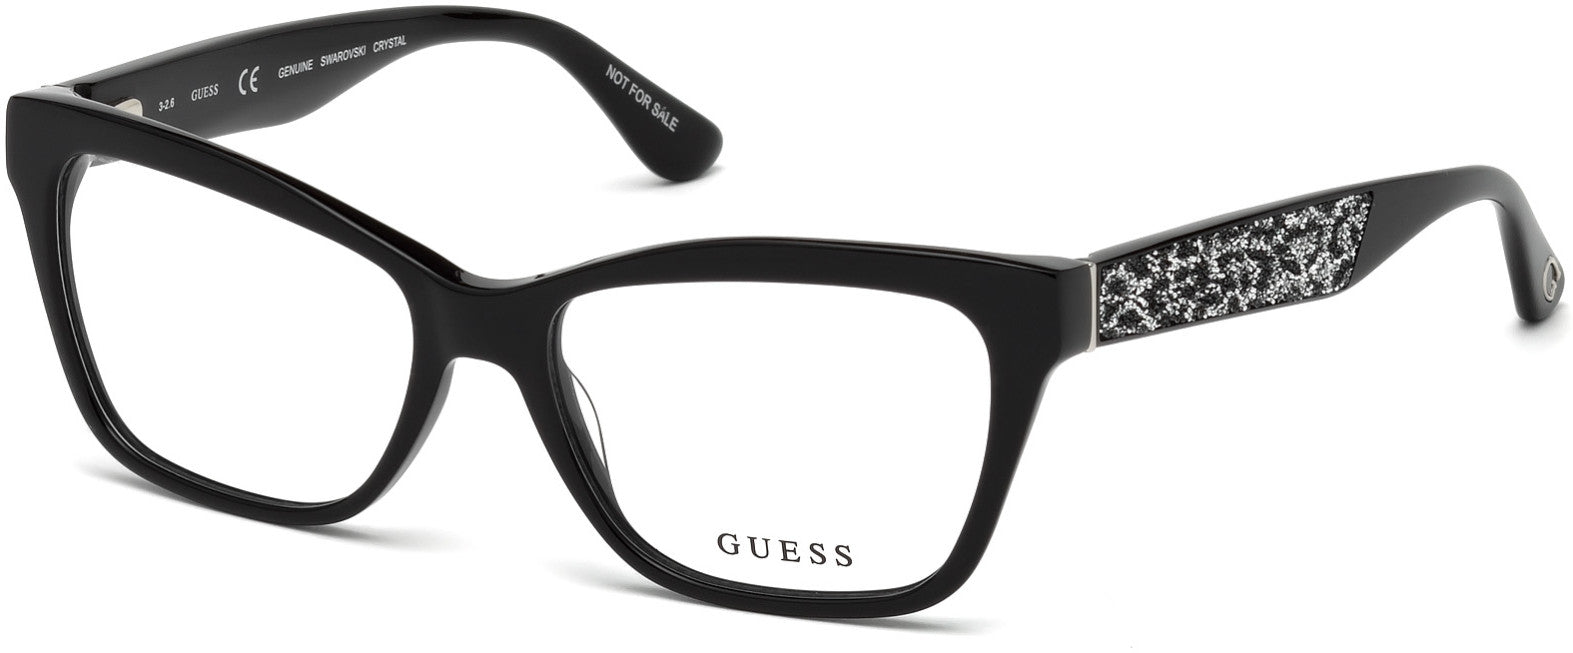 Guess GU2622 Geometric Eyeglasses 001-001 - Shiny Black